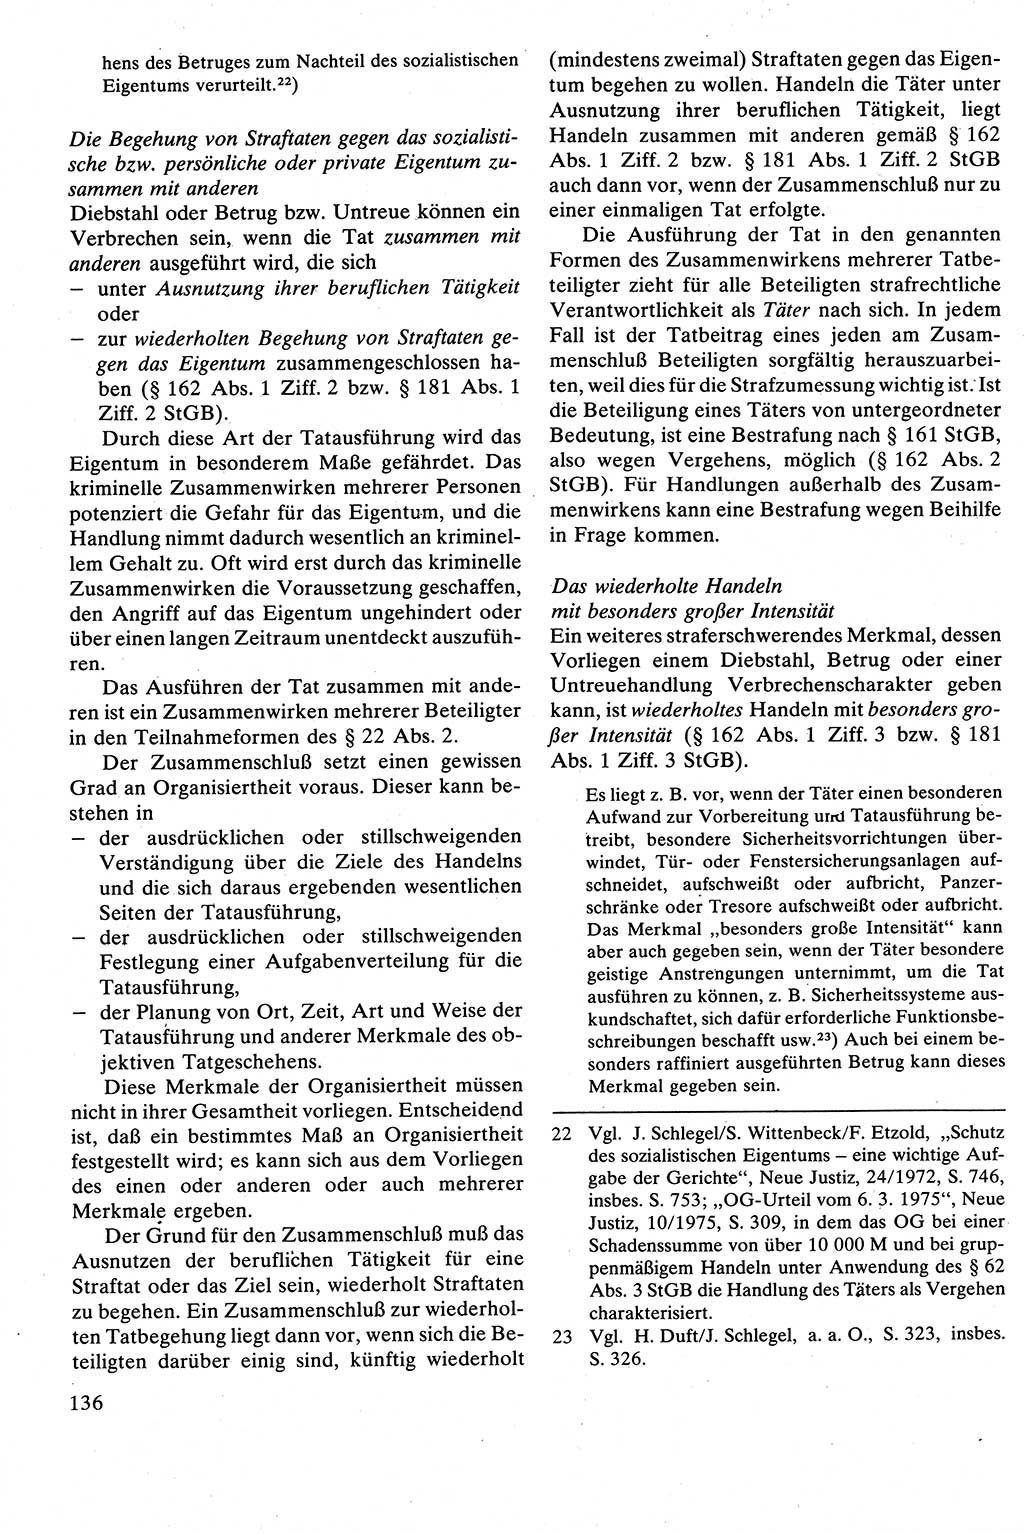 Strafrecht [Deutsche Demokratische Republik (DDR)], Besonderer Teil, Lehrbuch 1981, Seite 136 (Strafr. DDR BT Lb. 1981, S. 136)